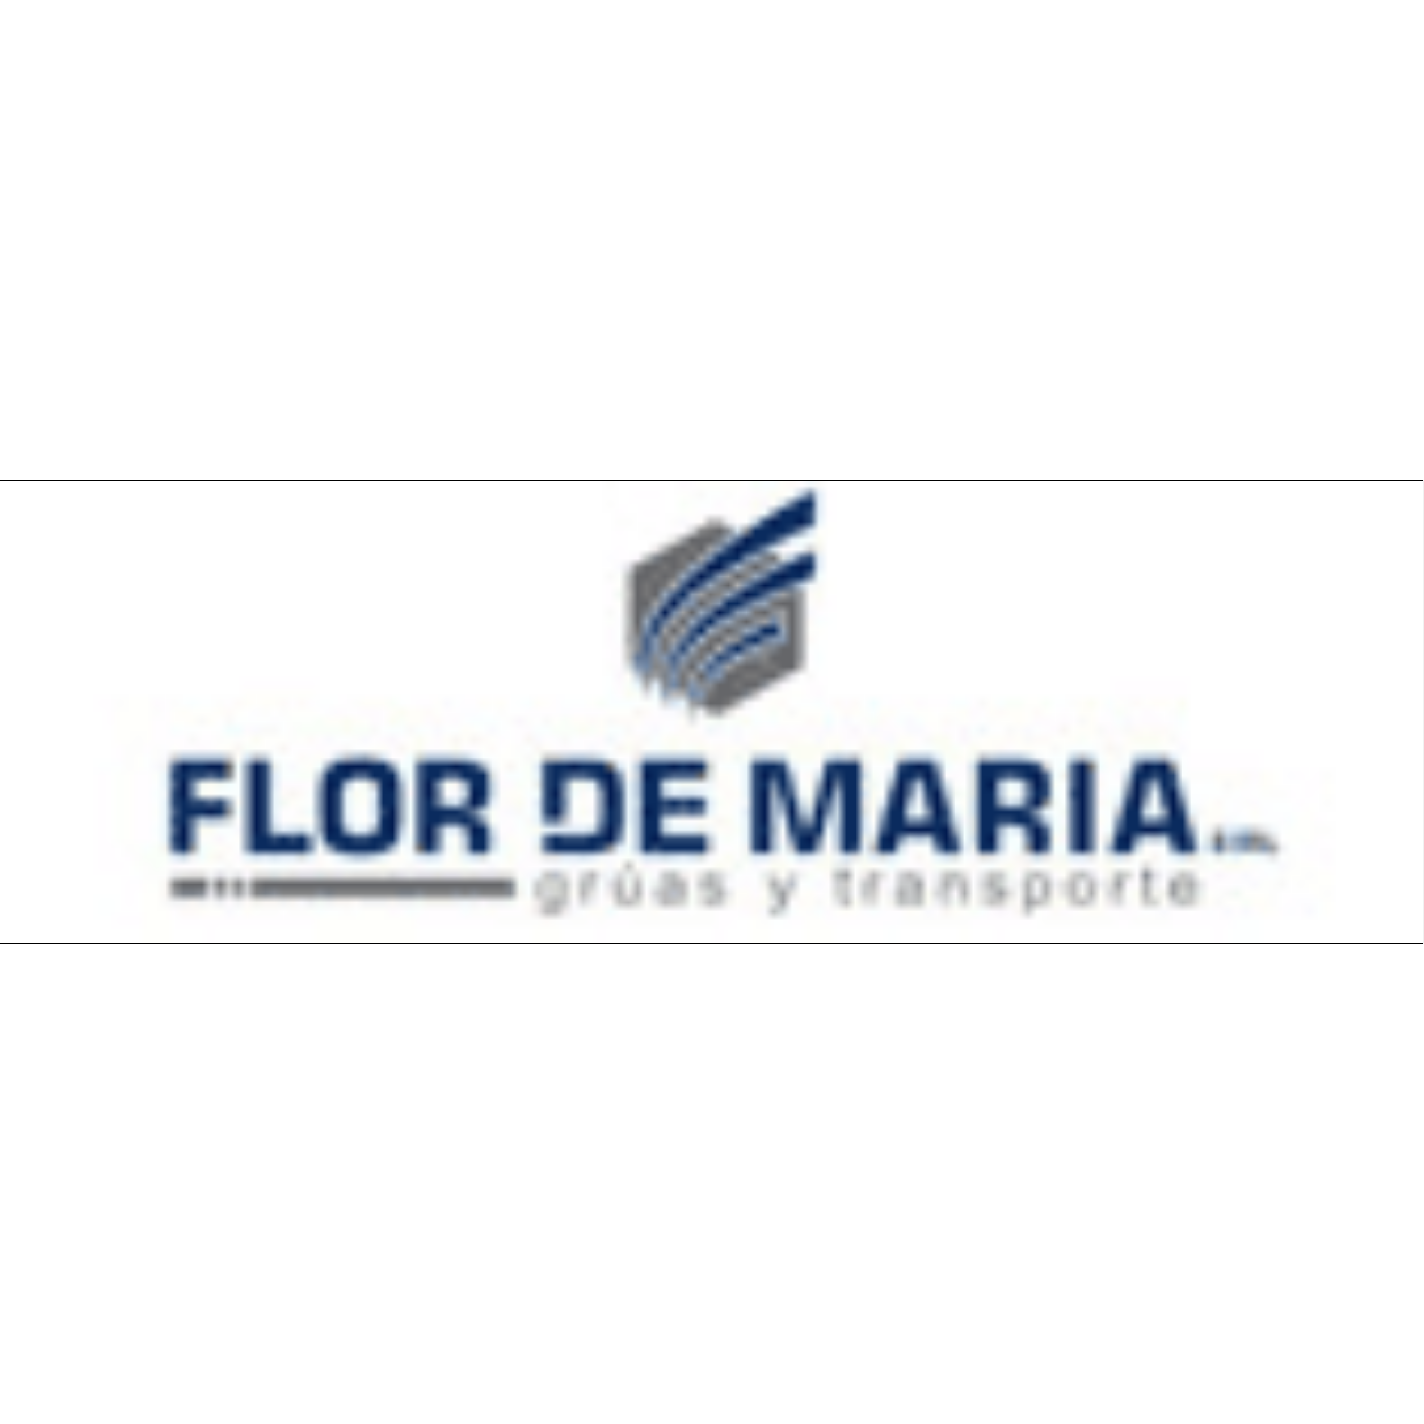 Flor De Maria E.I.R.L. - Crane Service - Arequipa - 958 025 669 Peru | ShowMeLocal.com